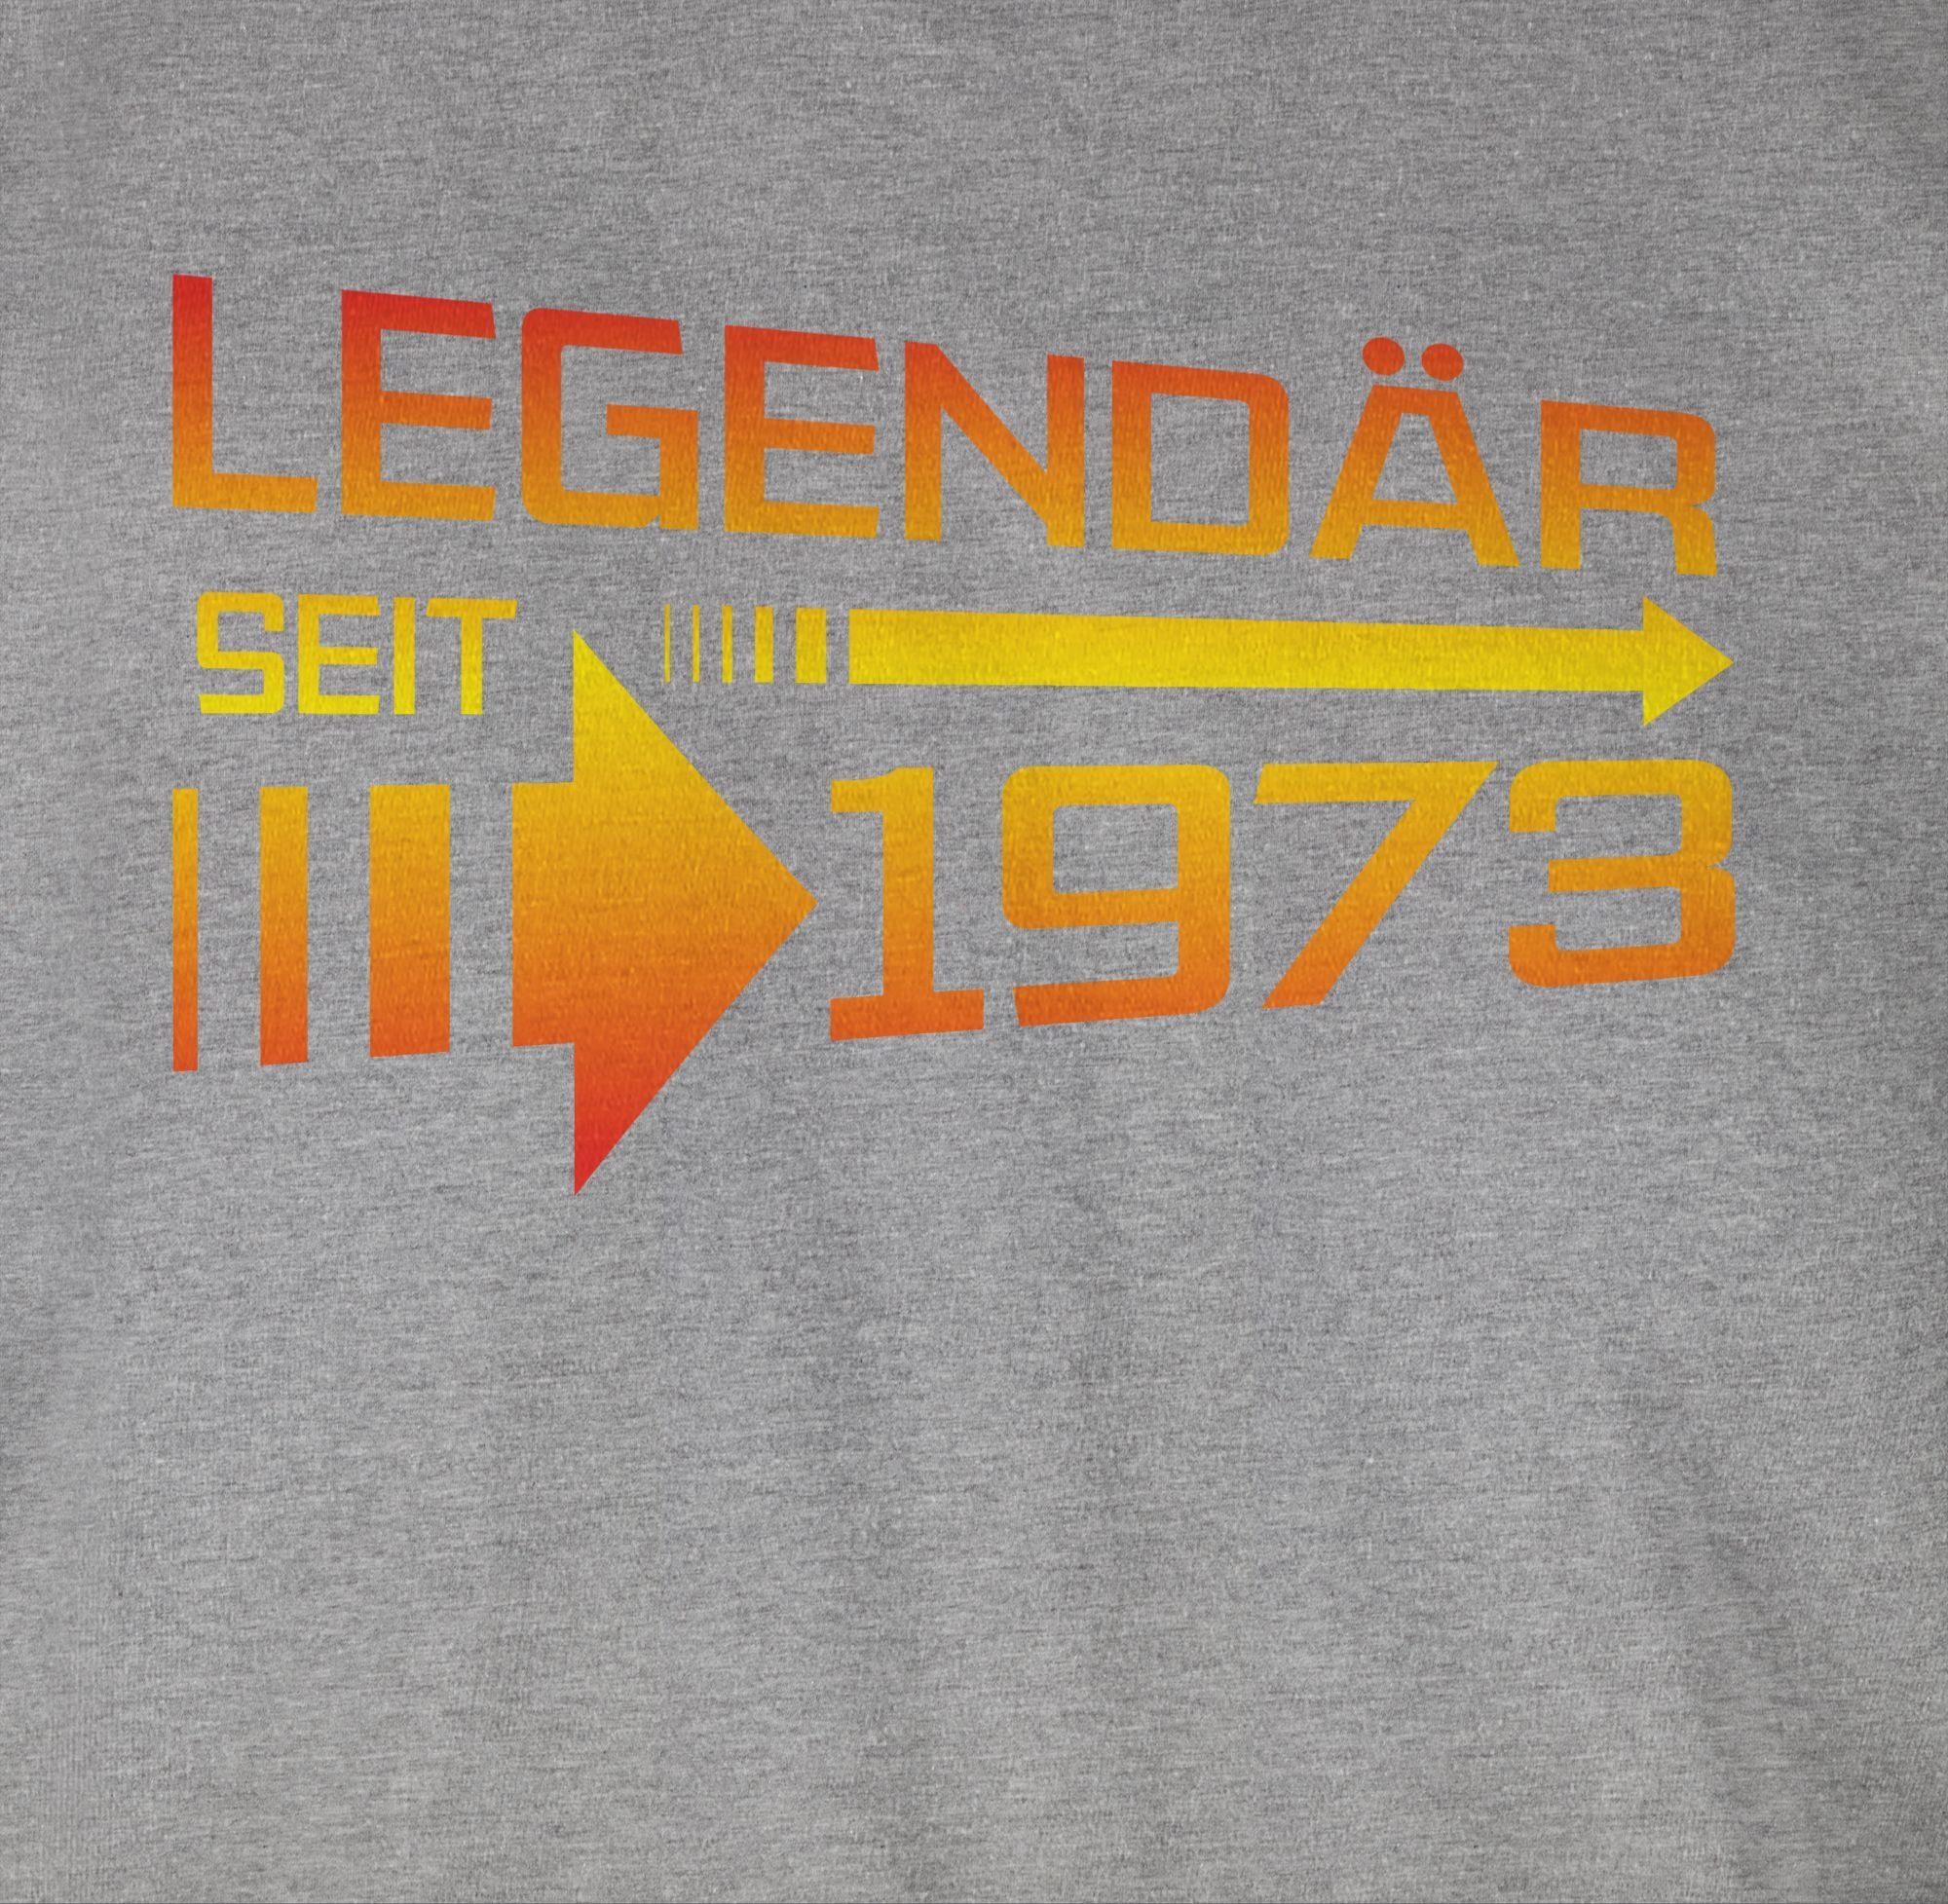 Geburtstag T-Shirt Legendär Grau Shirtracer 02 seit 50. 1973 gelb meliert / orange